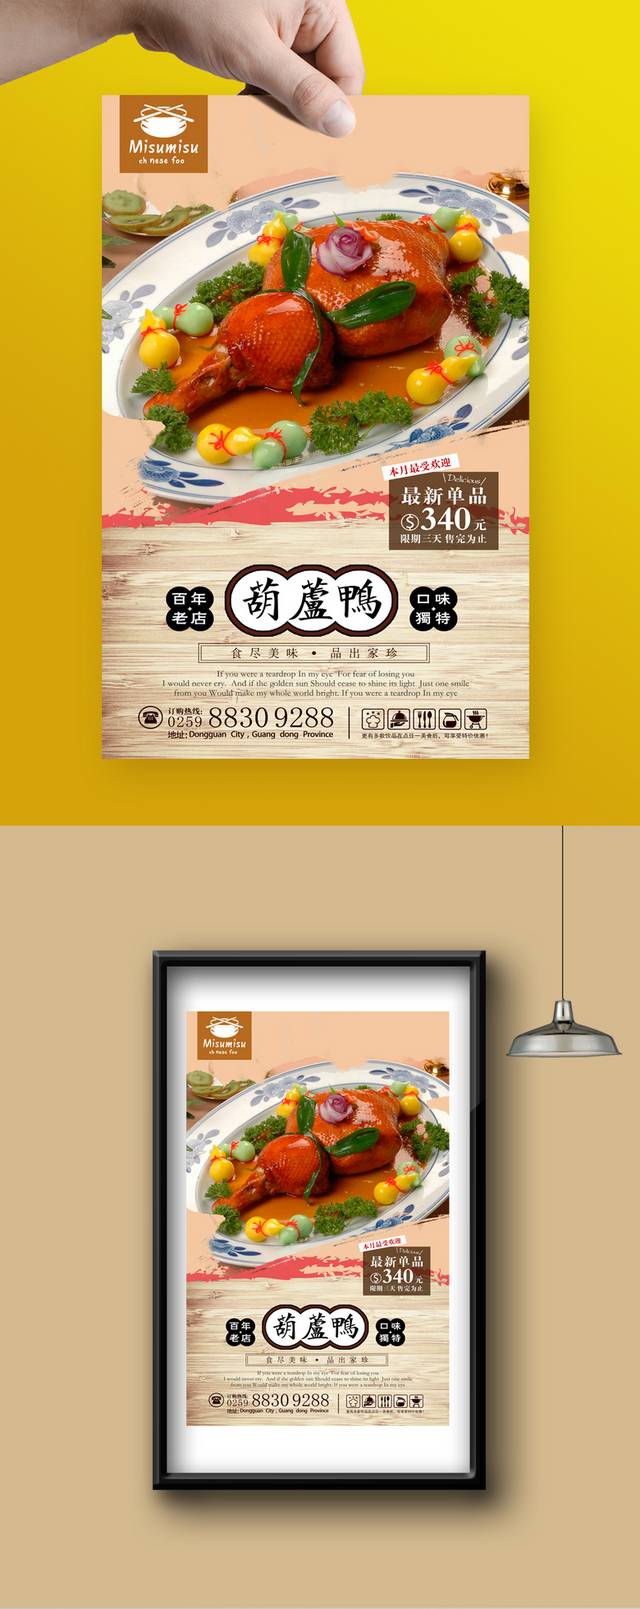 中华传统美食餐饮海报设计